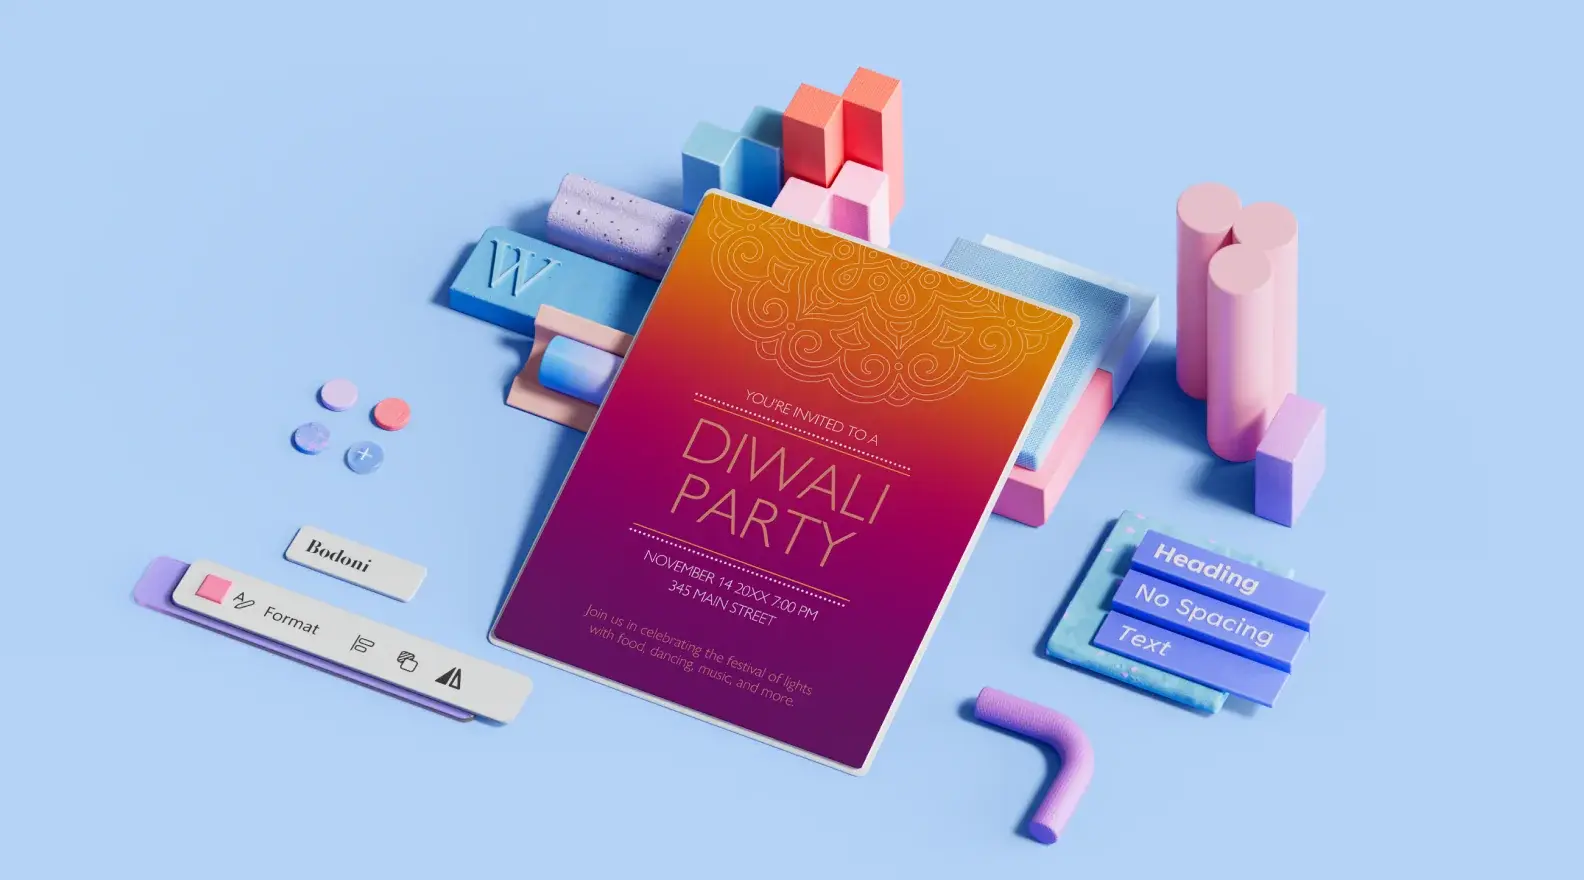 Plakatmal for arrangementer for diwali-fest, omgitt av 3D-utformingselementer